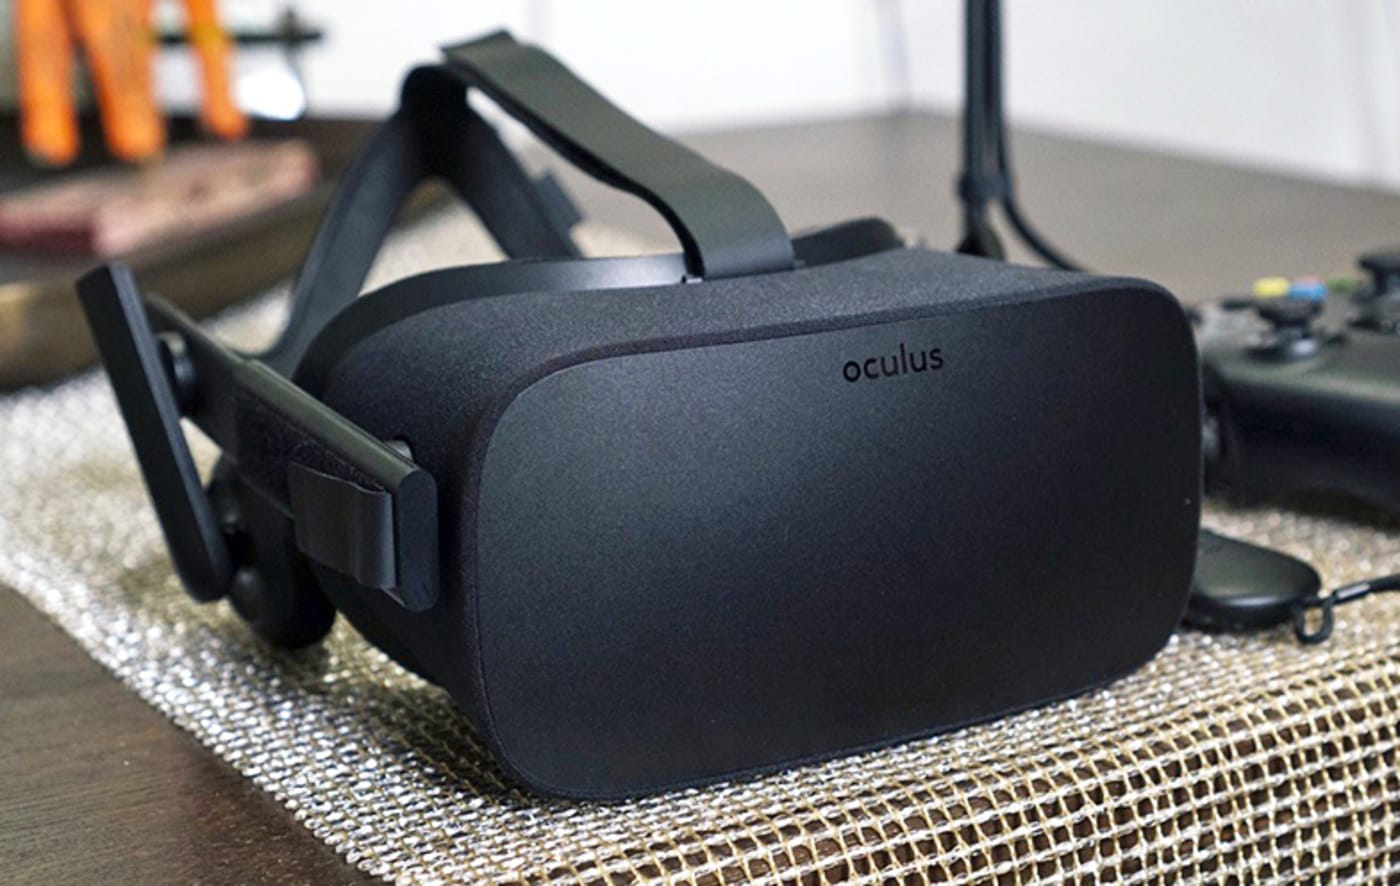 Senator Al Franken takes on Oculus over VR data mining